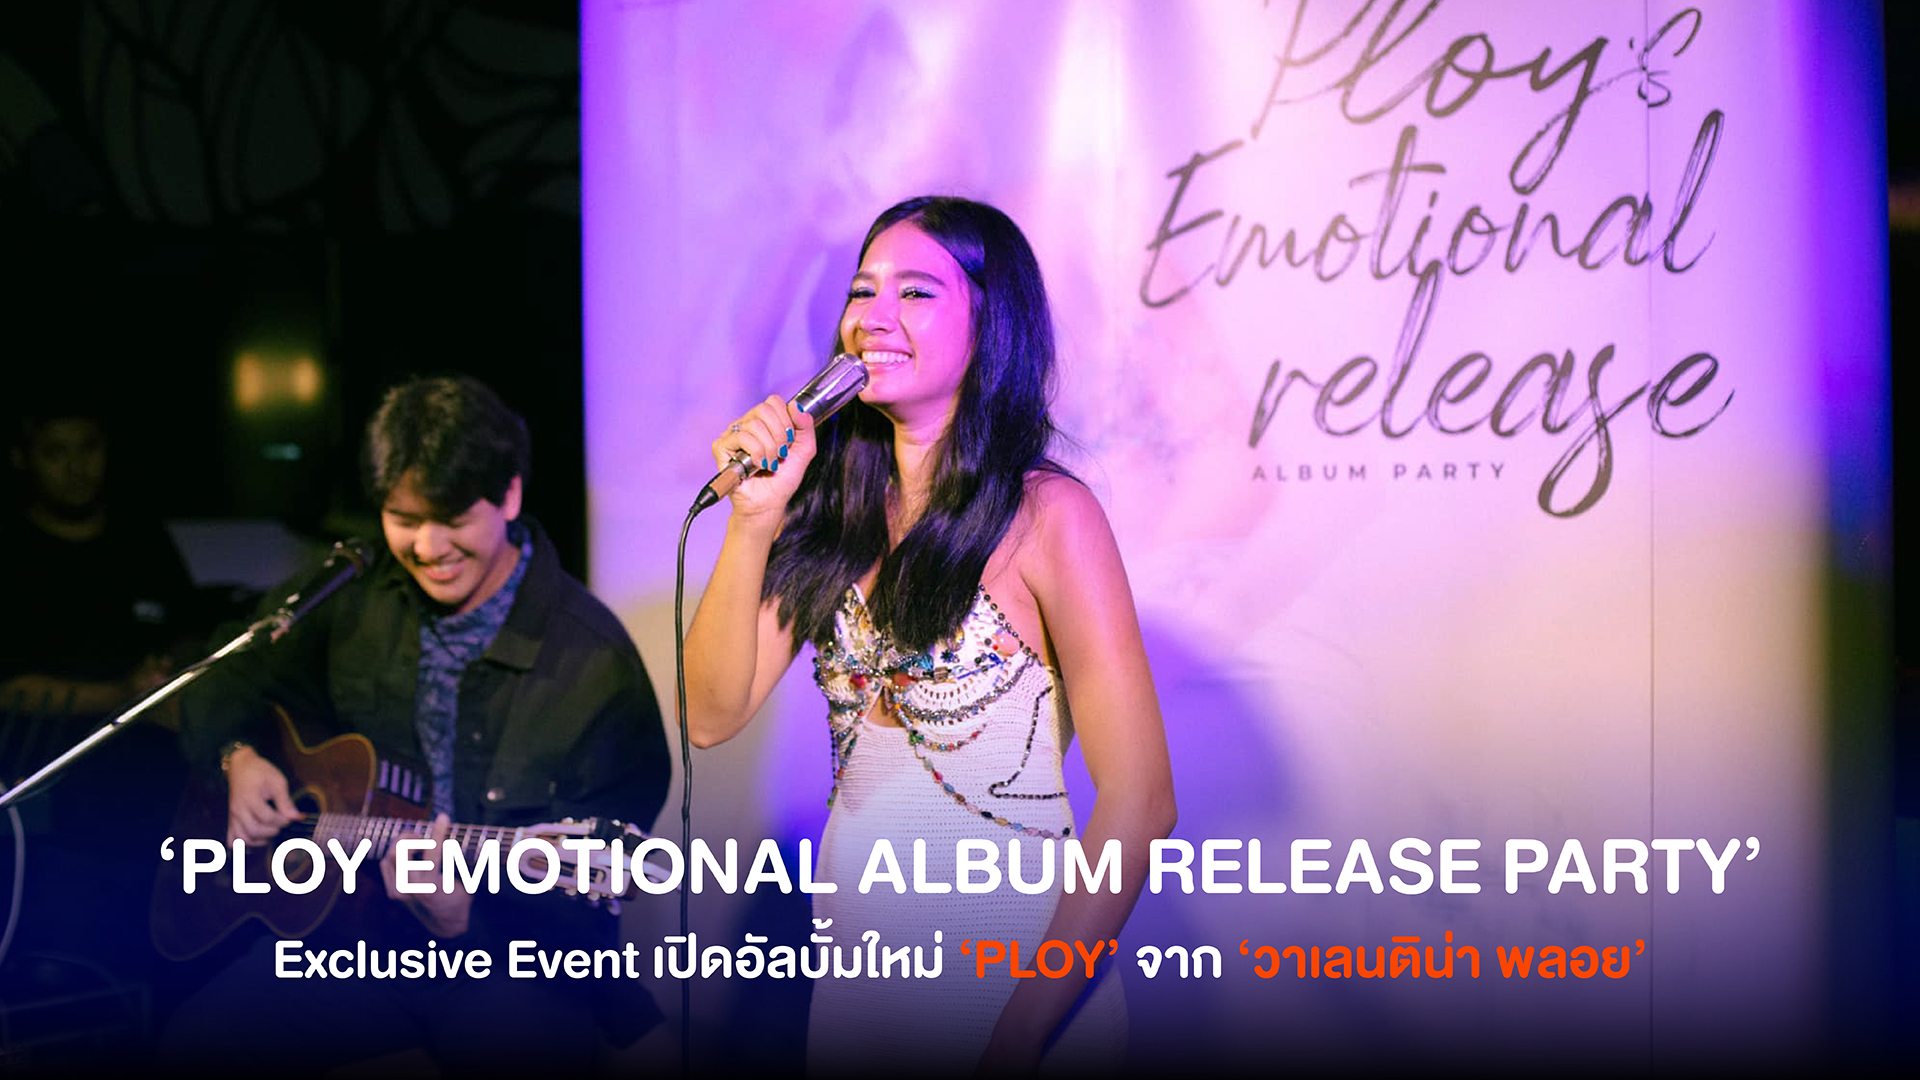 วาเลนติน่า พลอย จัด Exclusive Event ‘PLOY EMOTIONAL ALBUM RELEASE PARTY’ เต็มไปด้วยความประทับใจกับการเปิดอัลบั้มใหม่ ‘PLOY’